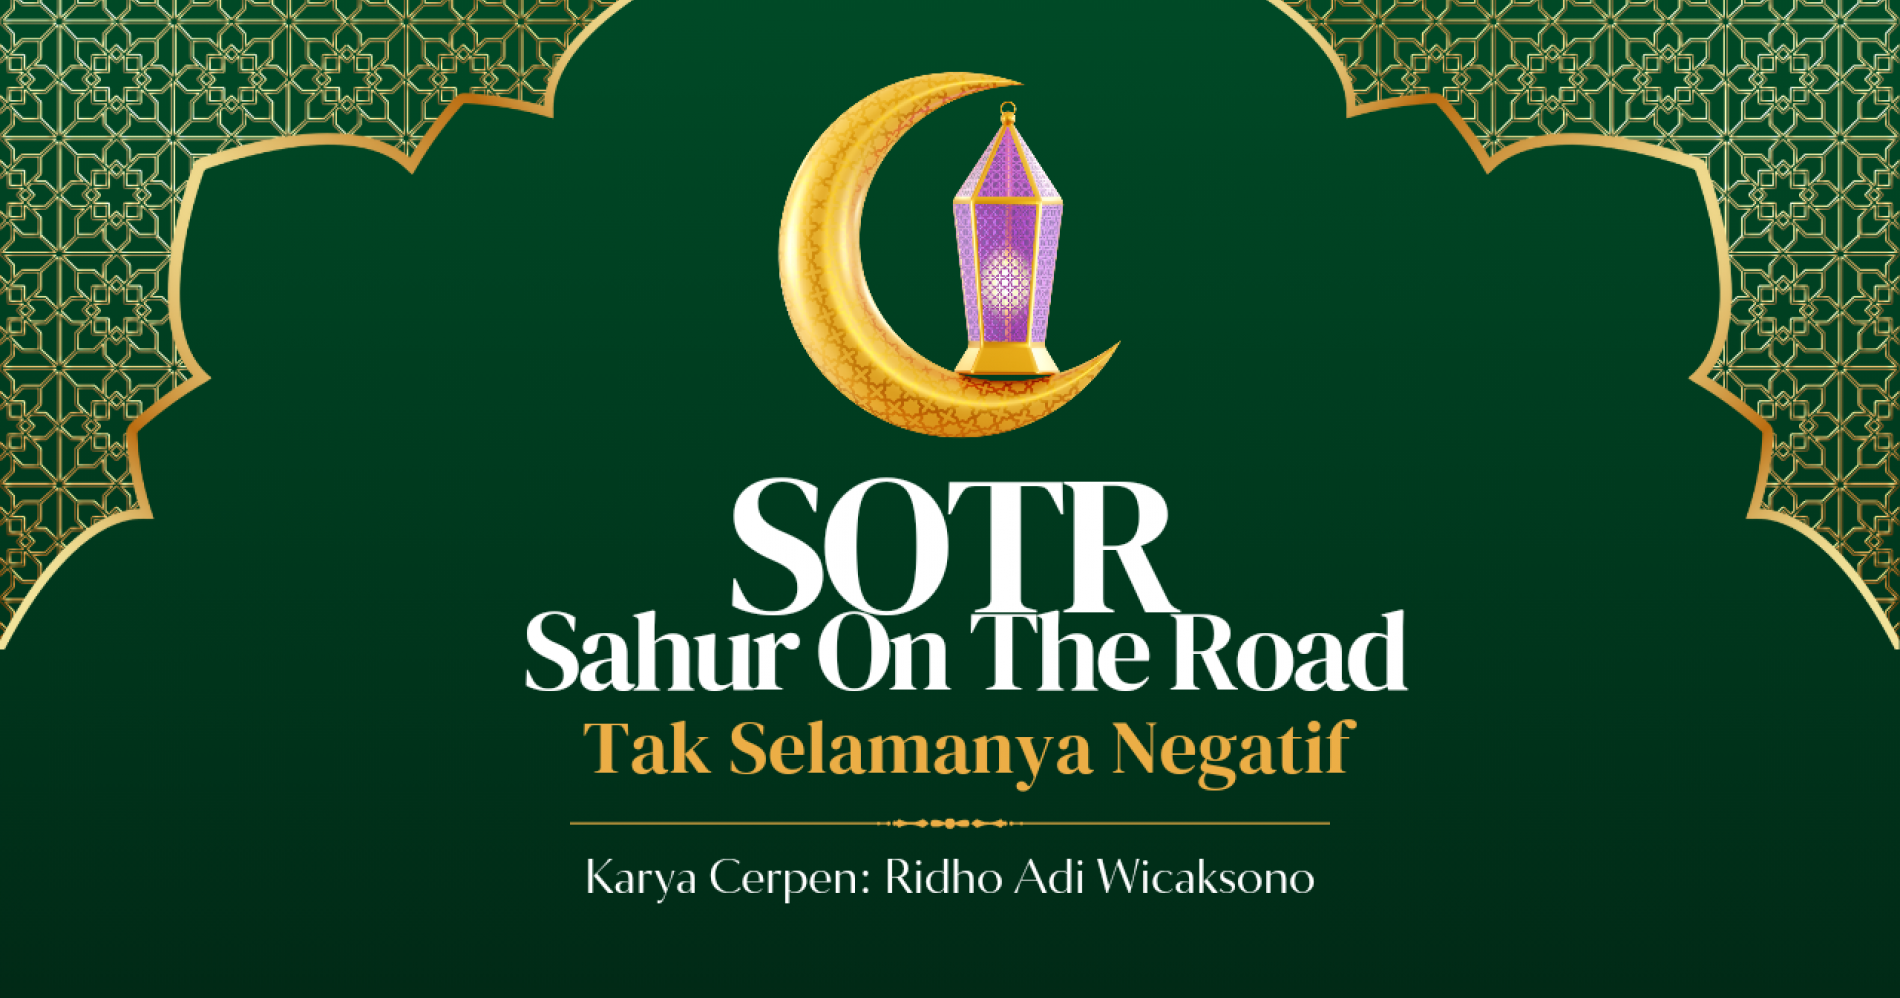 SOTR yang positif akan menambahkan banyak pahala selama bulan suci ramadan (Sumber gambar: Canva)